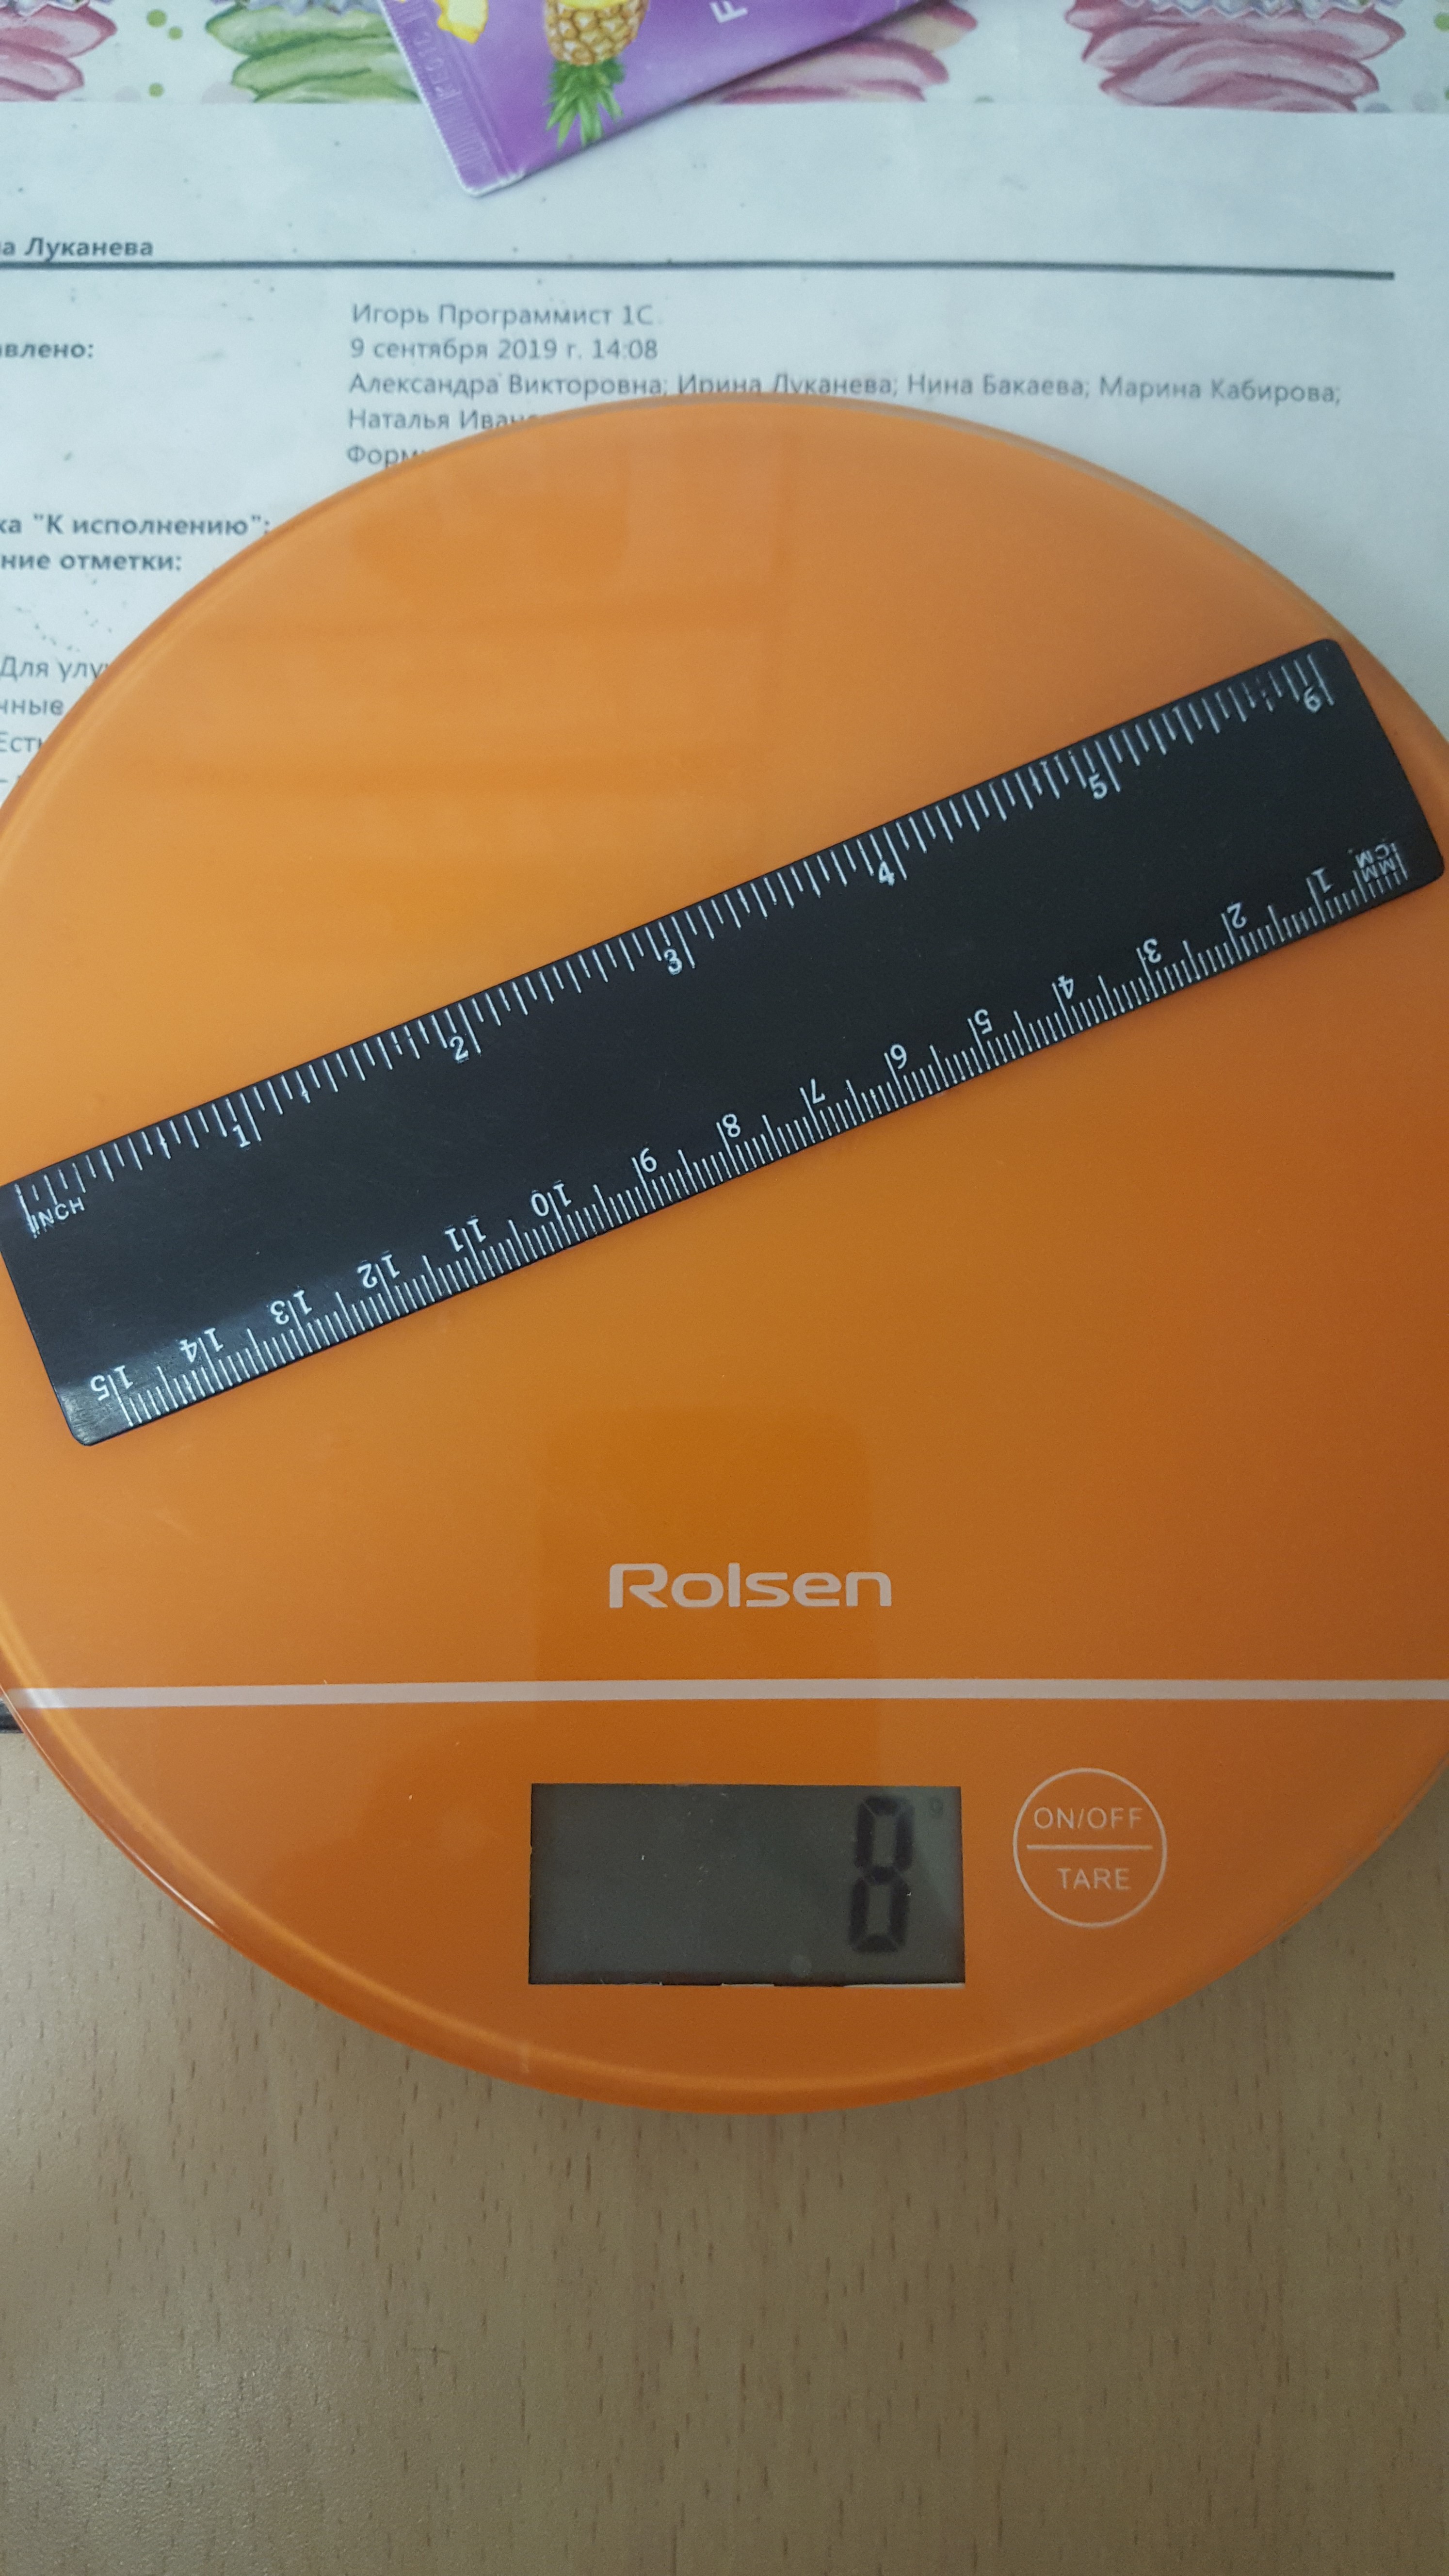 15 cm ruler weight